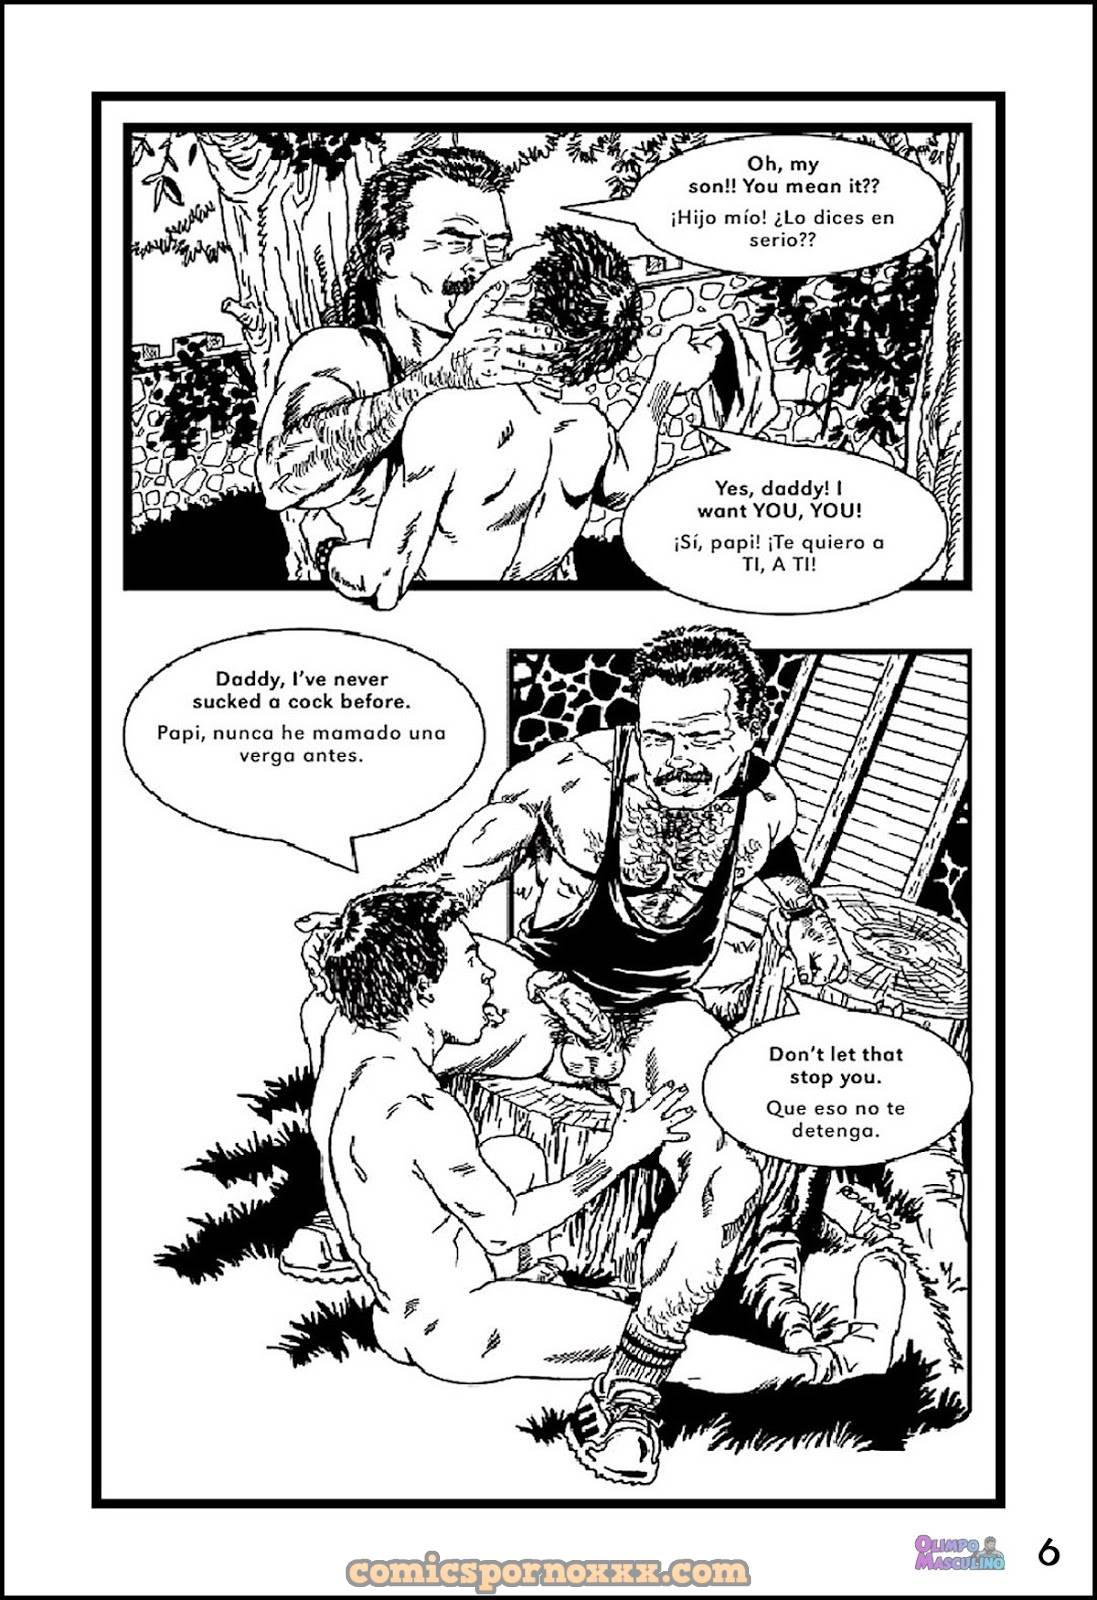 El Chico Rebelde #2 (Rolando Mérida) - 6 - Comics Porno - Hentai Manga - Cartoon XXX